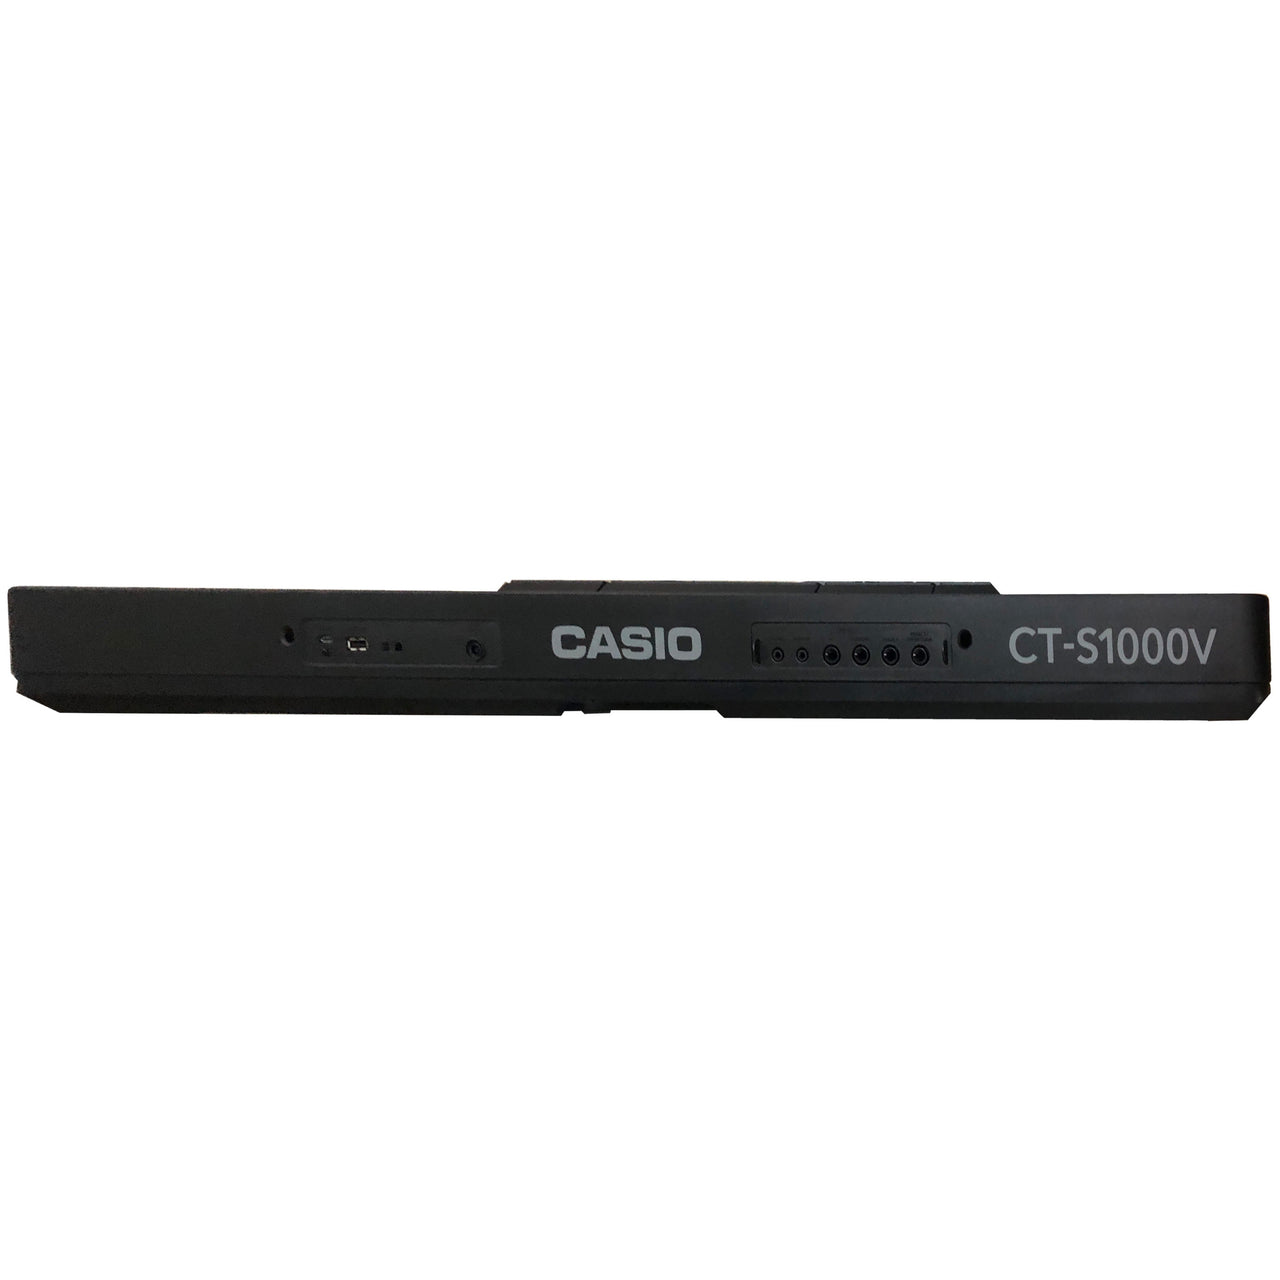 Teclado Casio Ct-s1000v Portatil Con Eliminador